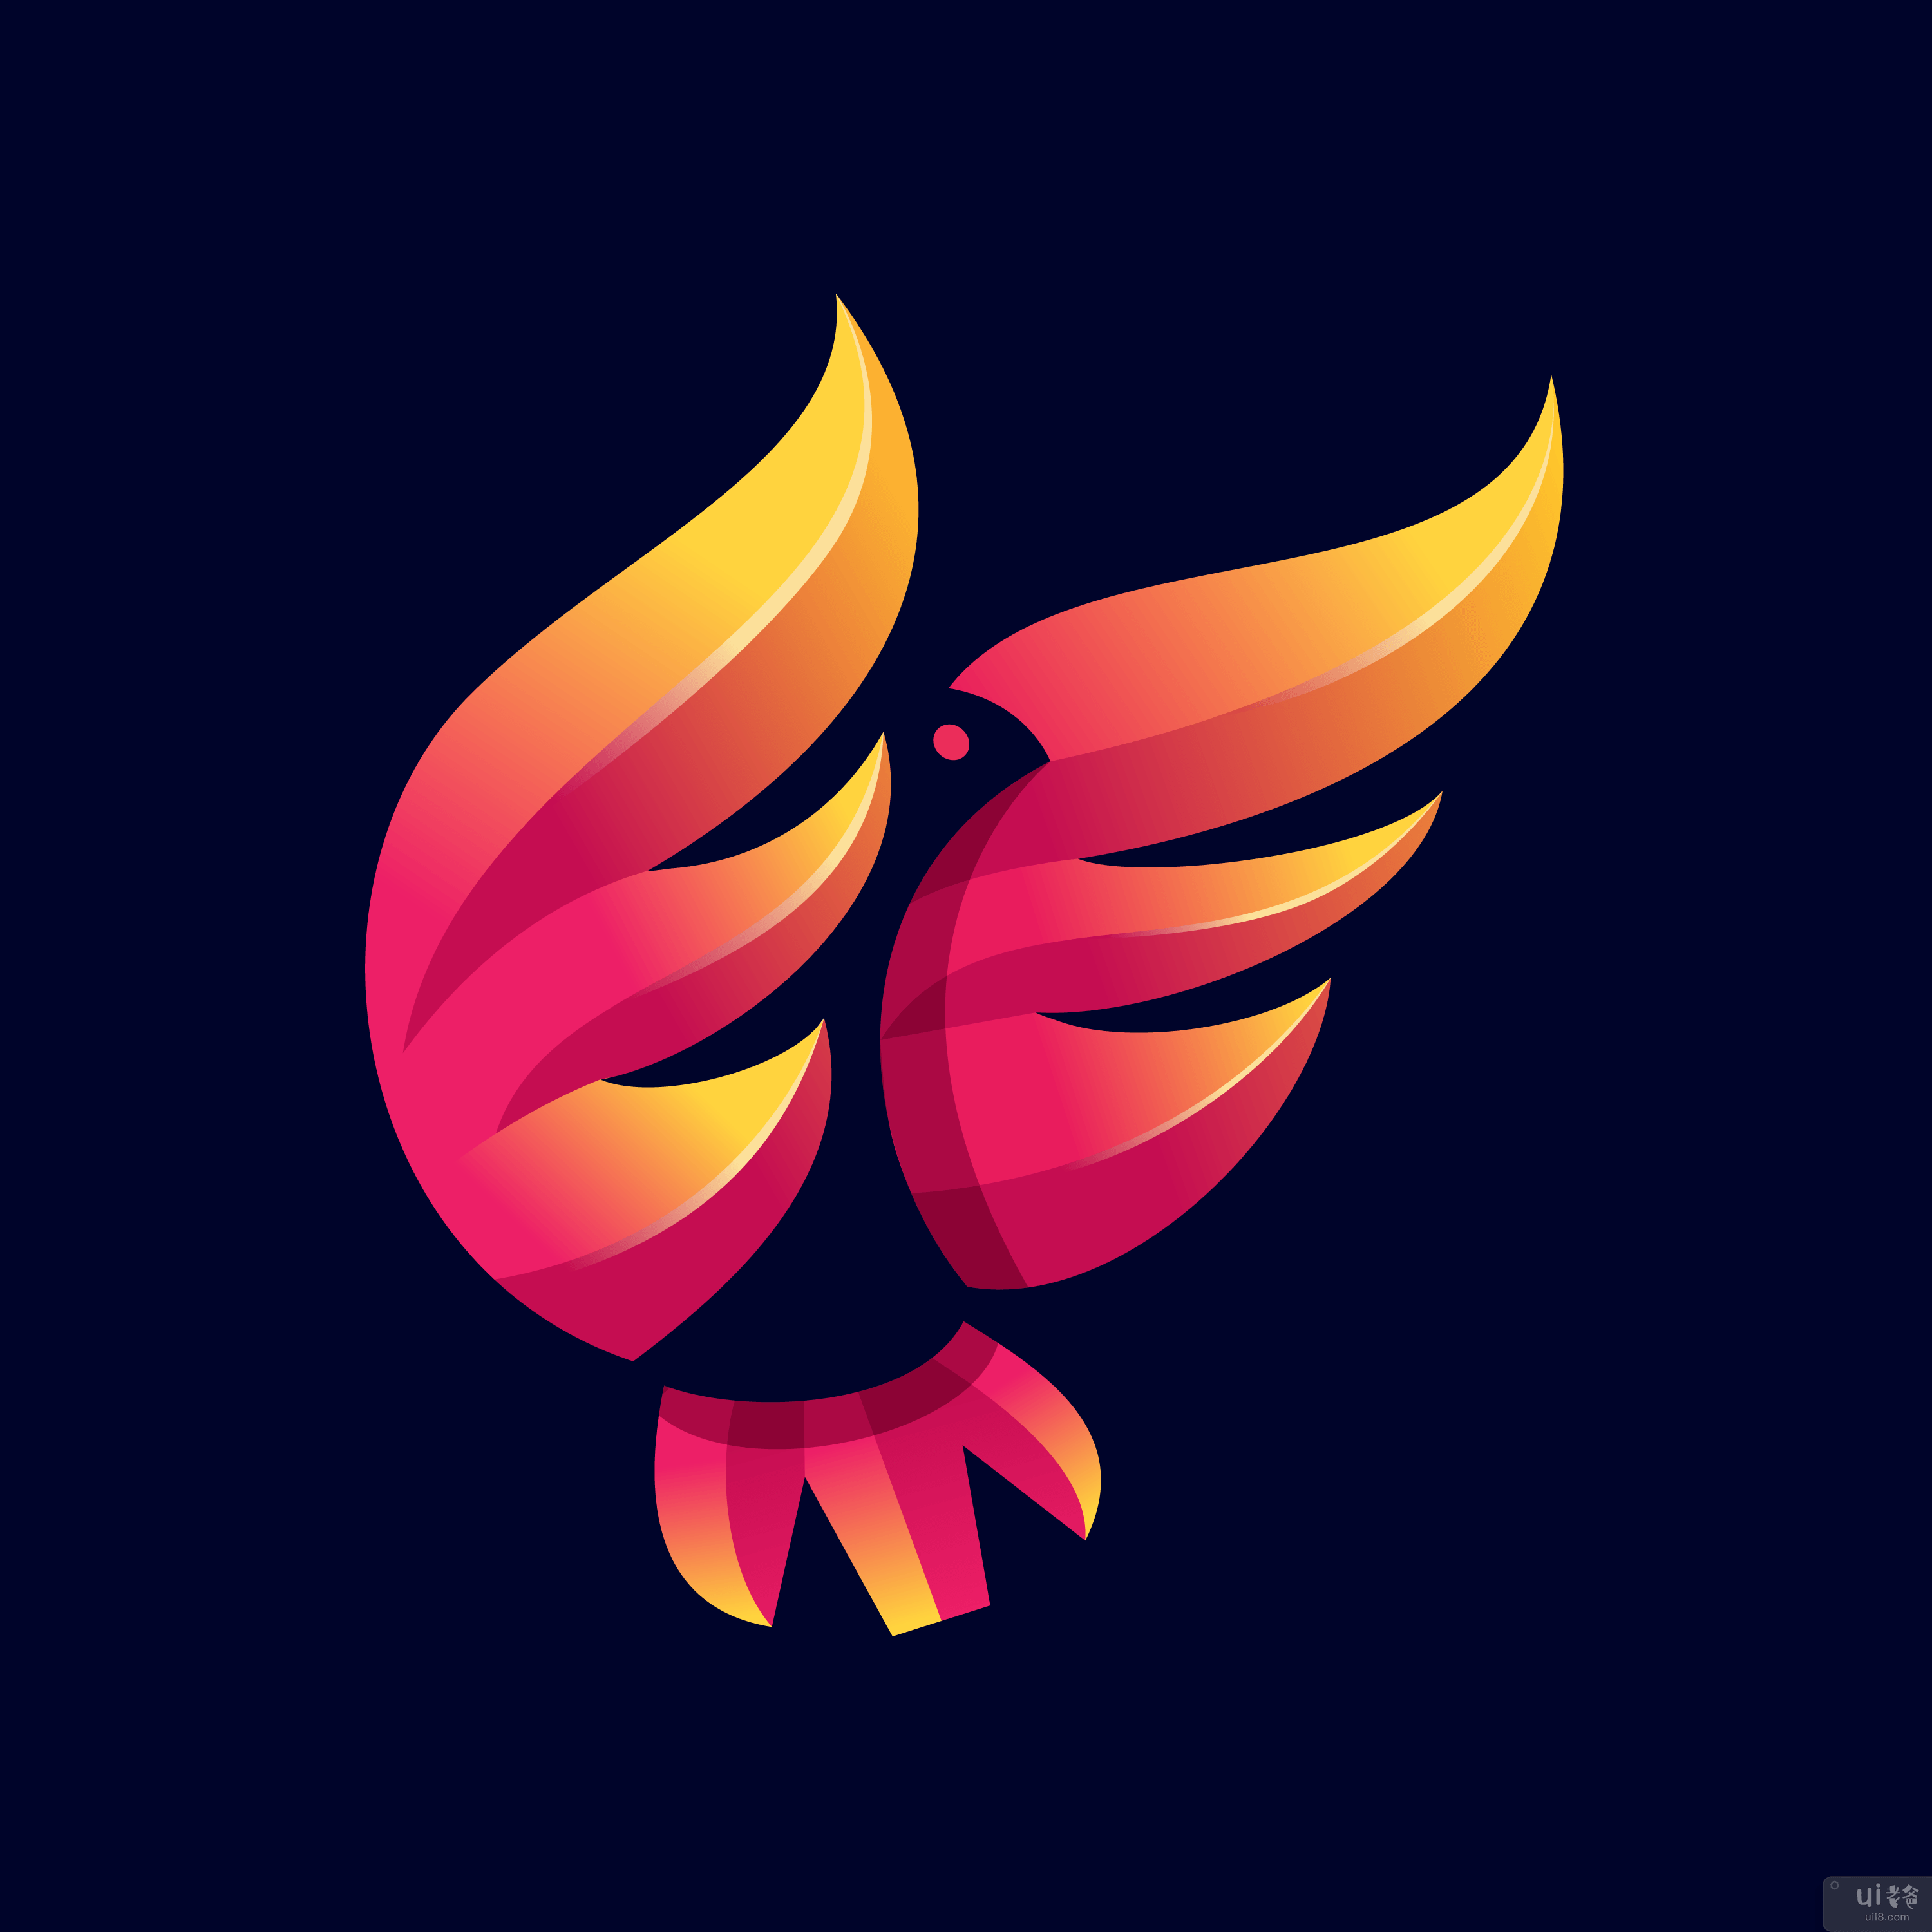 令人敬畏的老鹰标志模板矢量(Awesome eagle logo template vector)插图